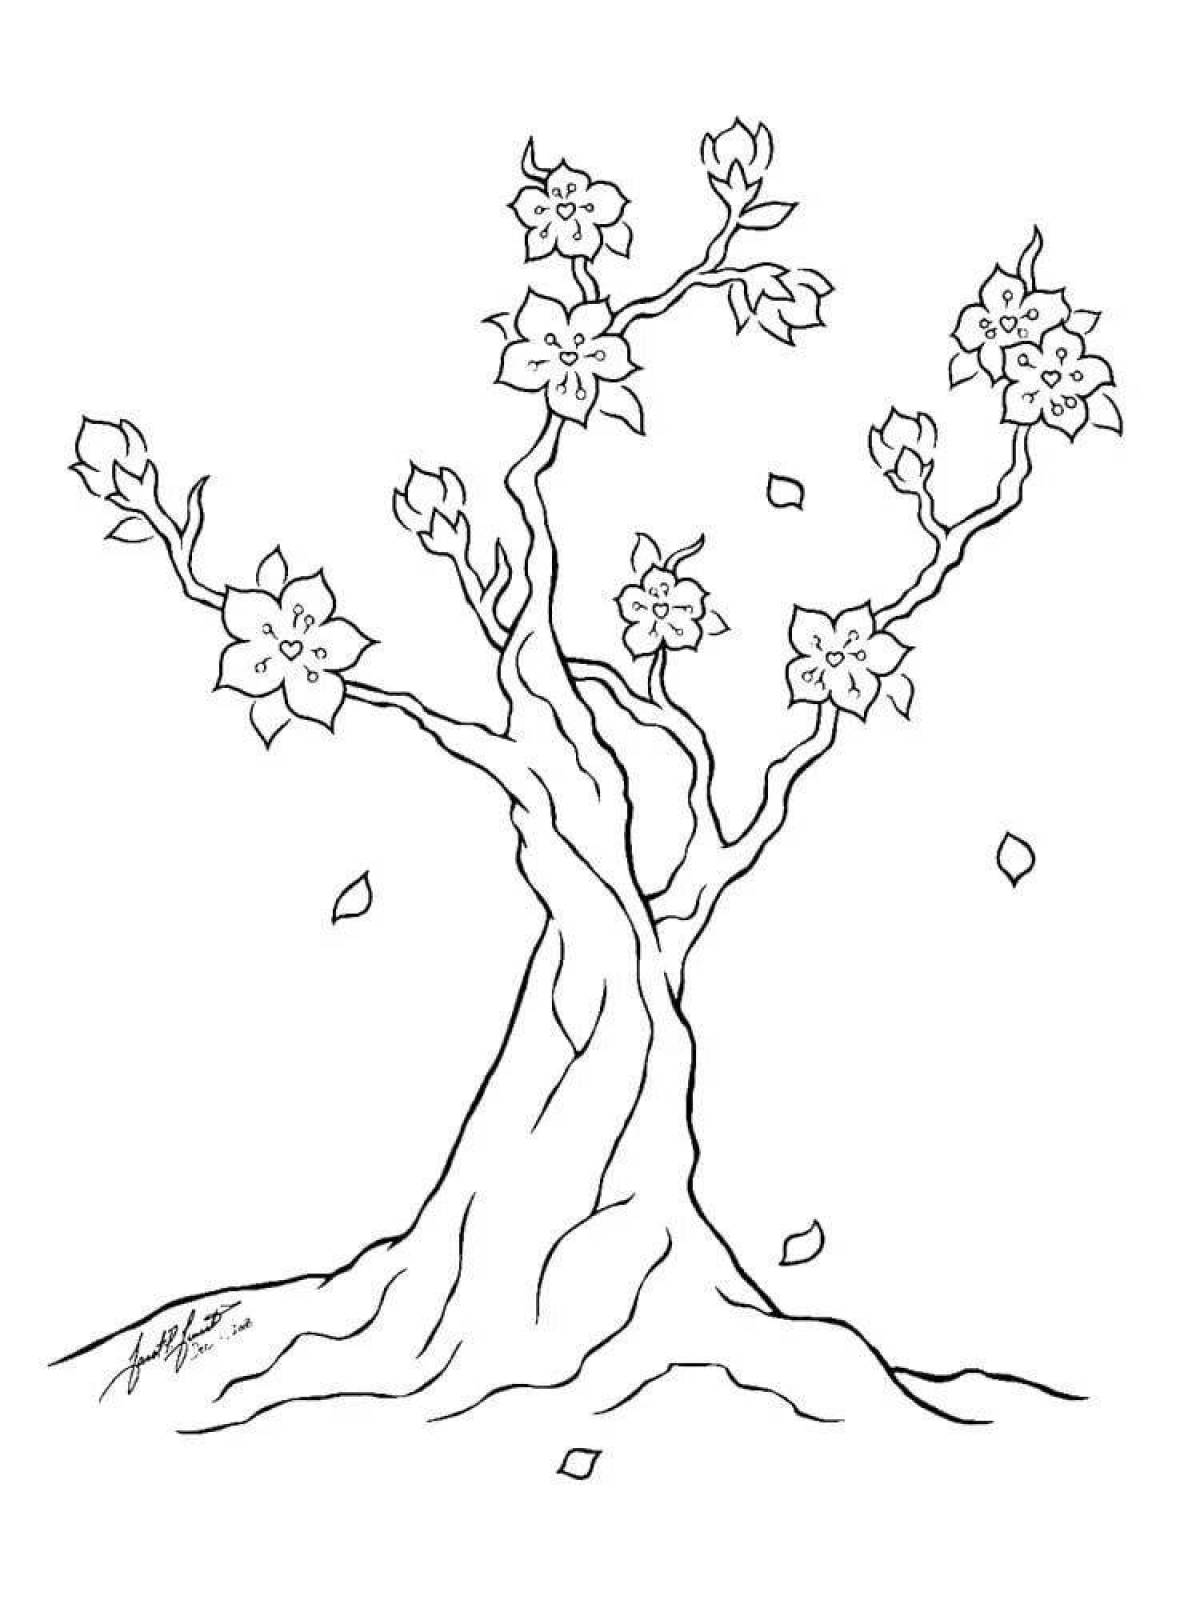 Сакура шаблон. Дерево Сакура карандашом. Сакура рисунок карандашом для срисовки. Рисунки деревьев для срисовки. Сакура дерево рисунок карандашом.